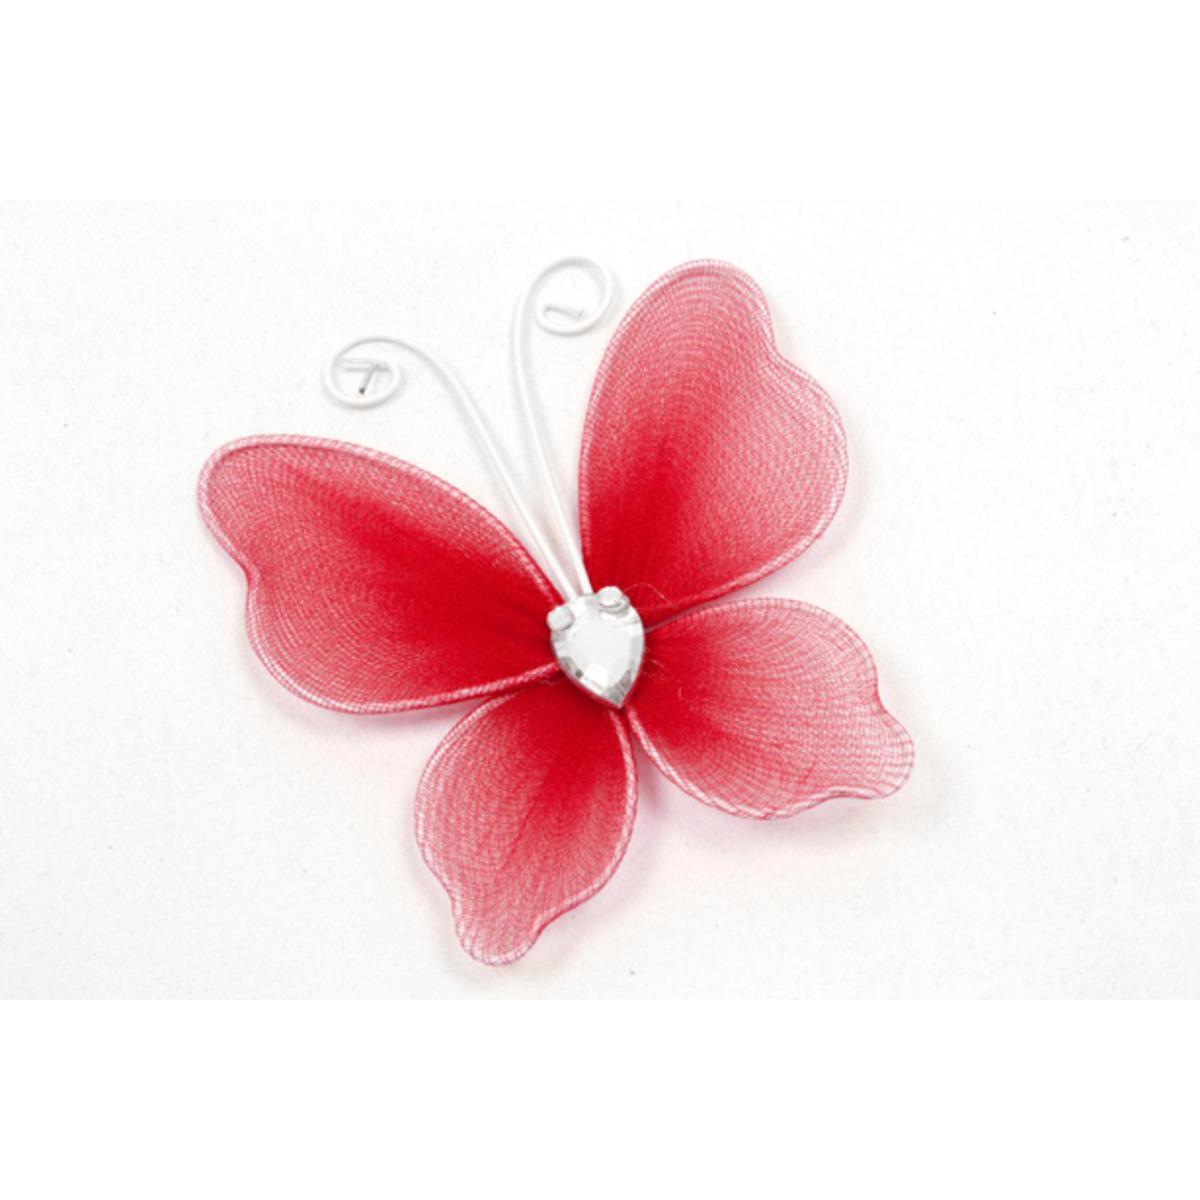 6 papillons décoratifs armature métal - Polyester - 5 x6 cm - Rose